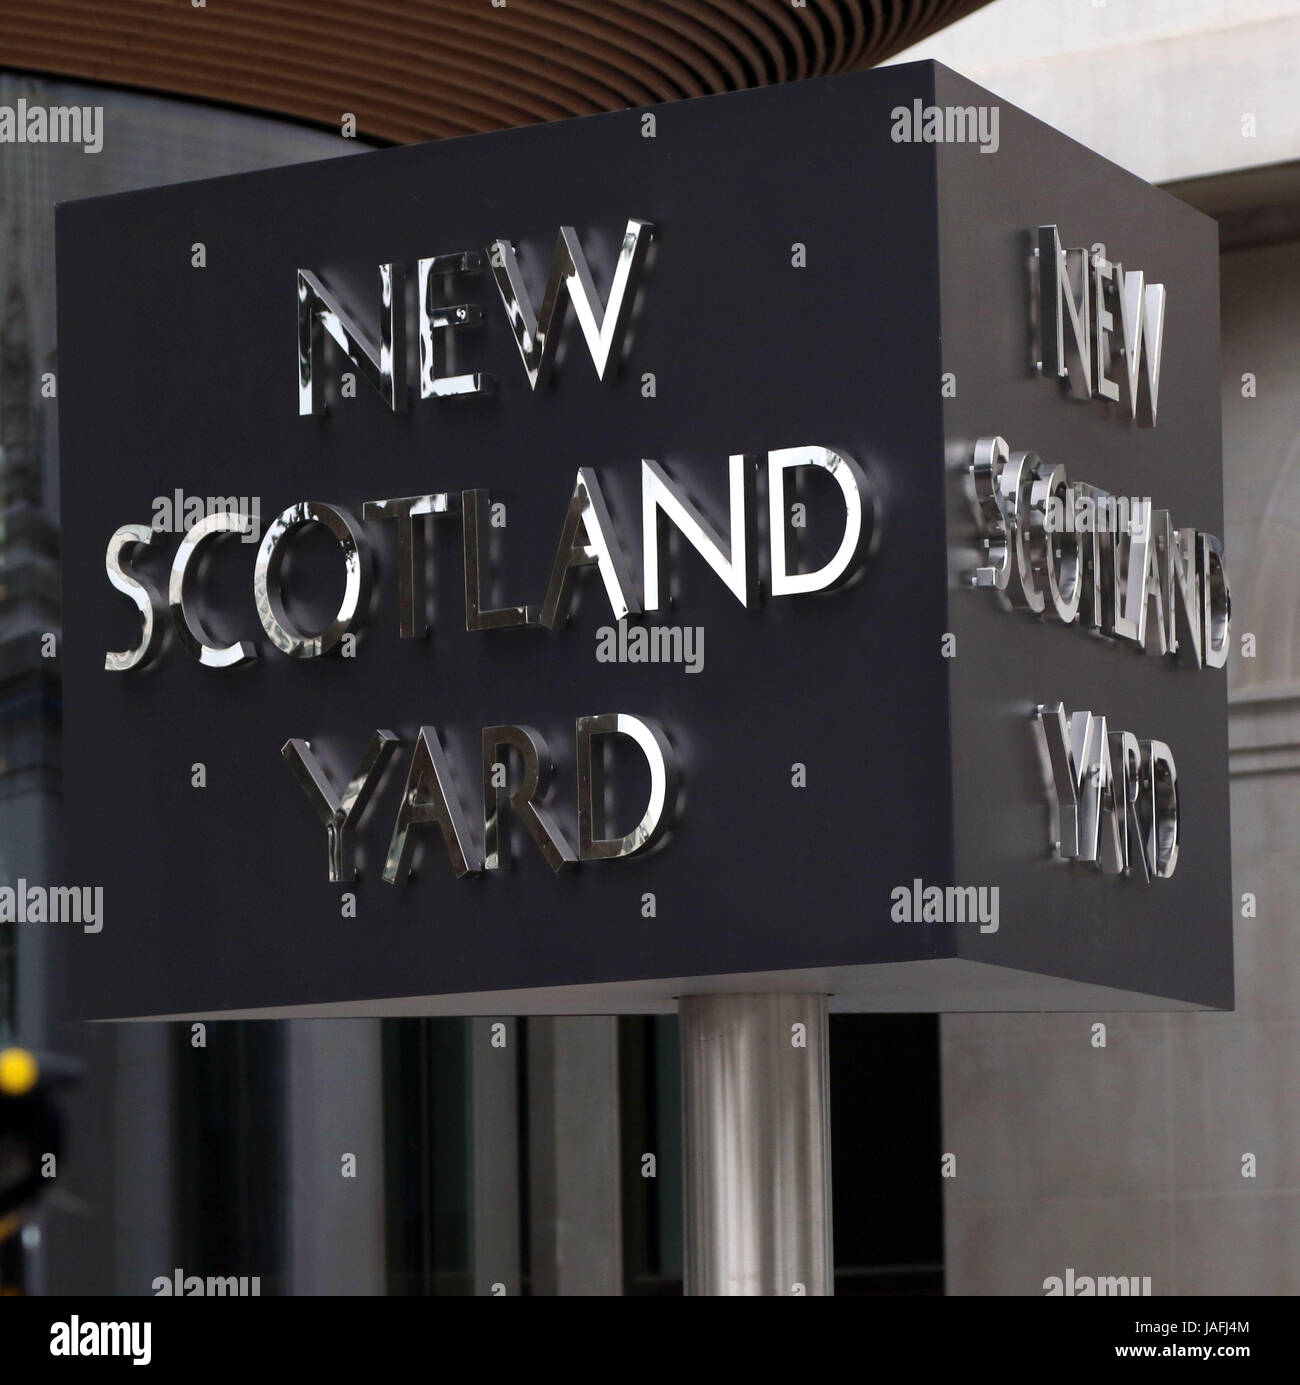 5 juin 2017 - New Scotland Yard, le quartier général de la Metropolitan Police Service, qui est maintenant situé à Victoria Embankment Banque D'Images